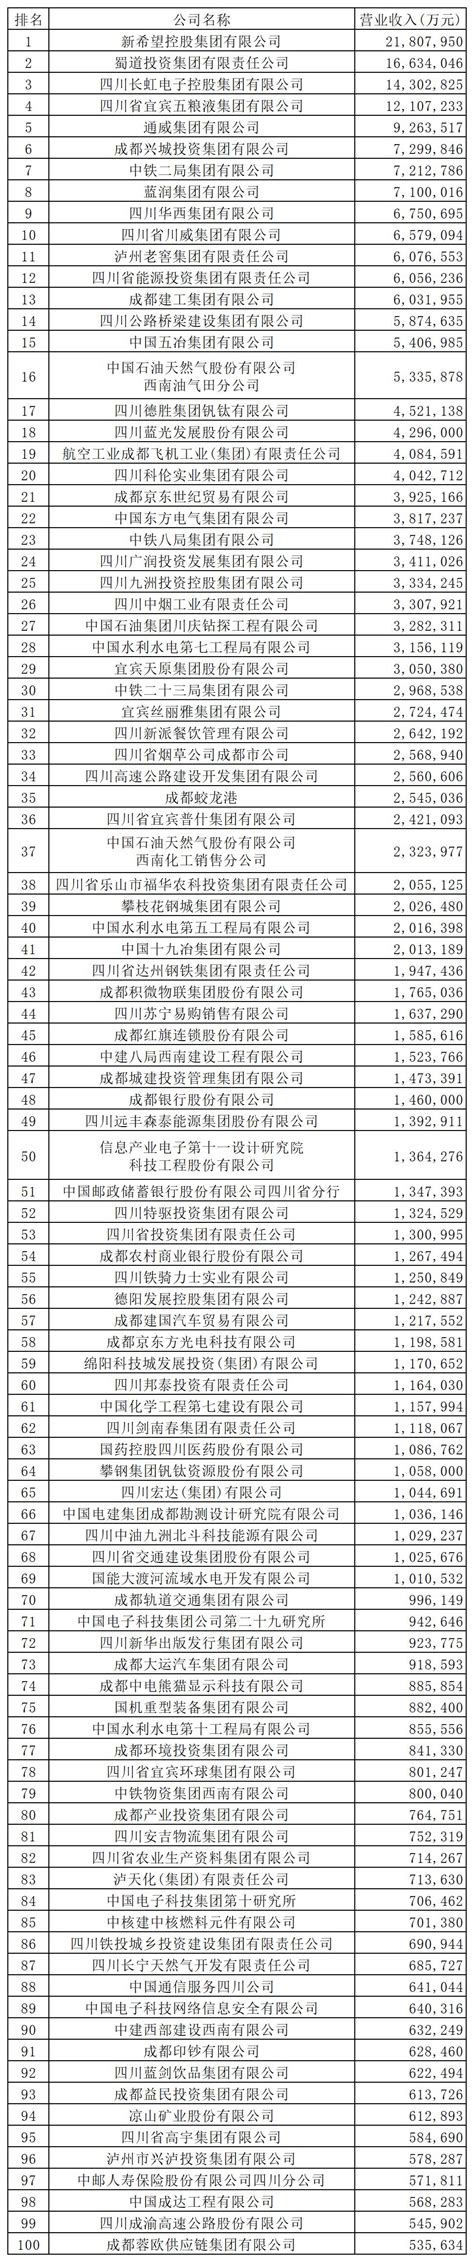 2019四川企业100强新鲜出炉 “千亿级”企业增至2家|资讯频道_51网